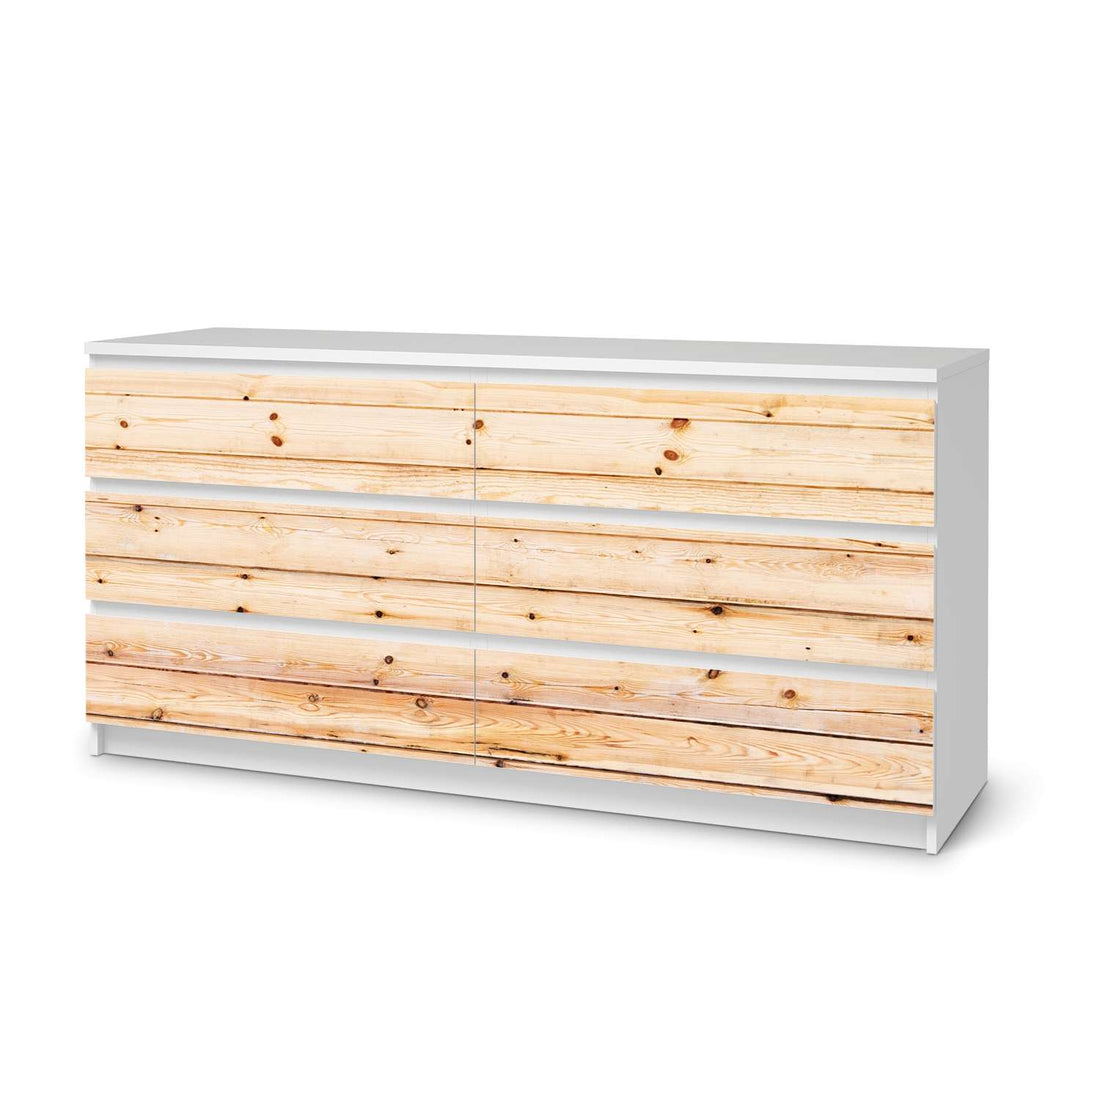 Möbelfolie Bright Planks - IKEA Malm Kommode 6 Schubladen (breit)  - weiss